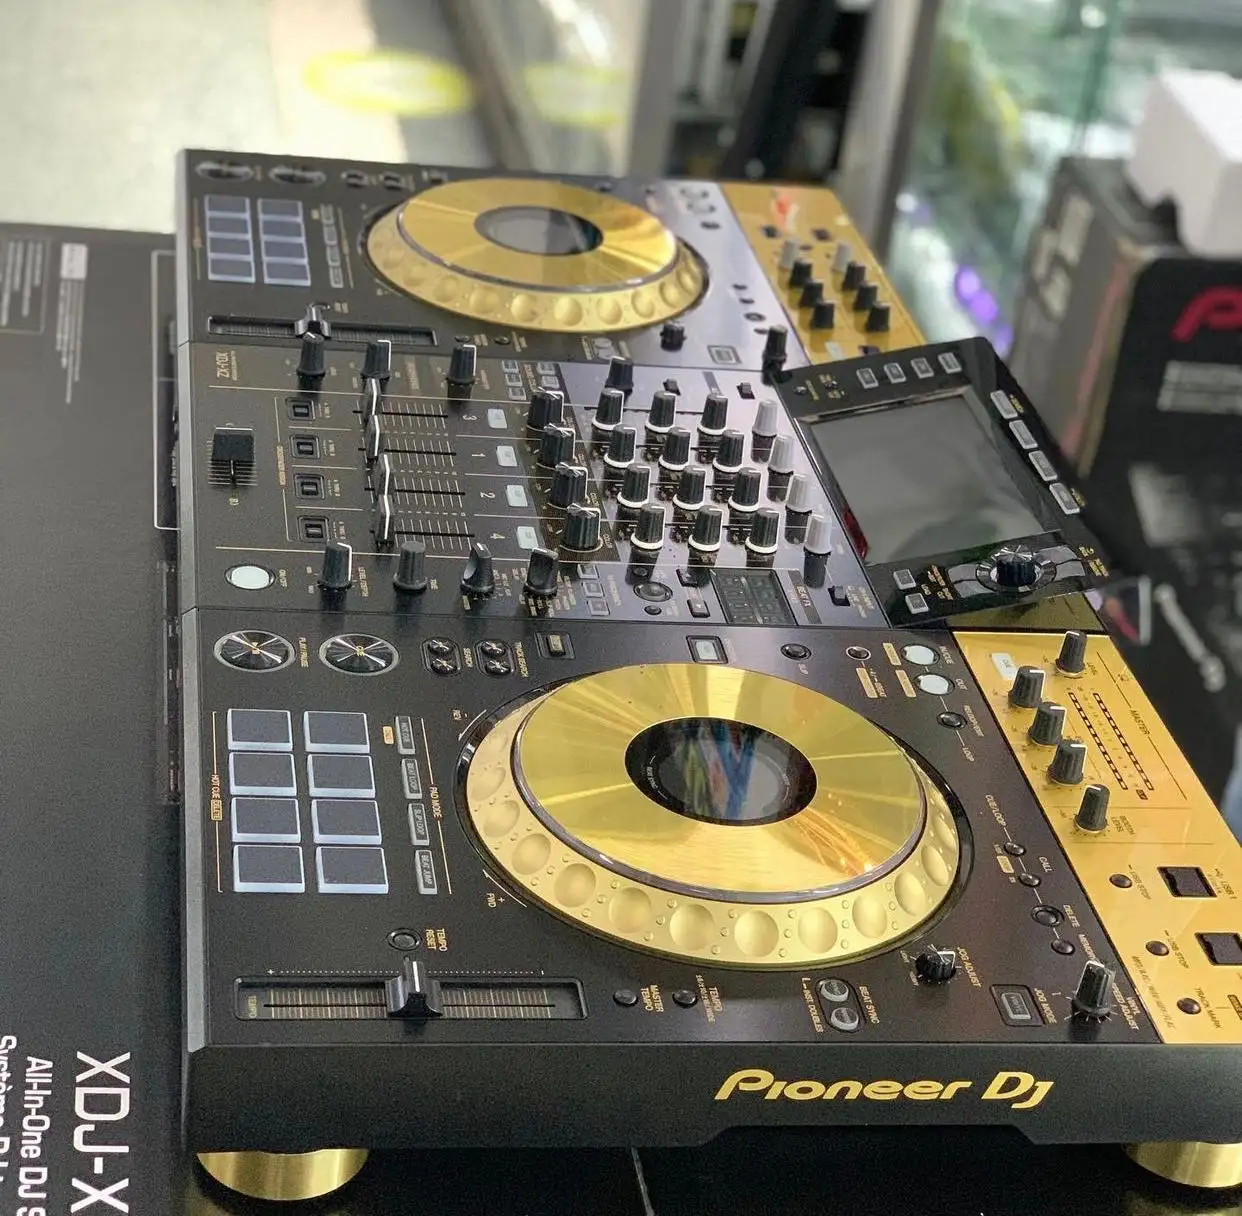 100% Pioneer DJ XDJ-XZ système DJ professionnel tout-en-un avec boîtier de vol doré sur noir